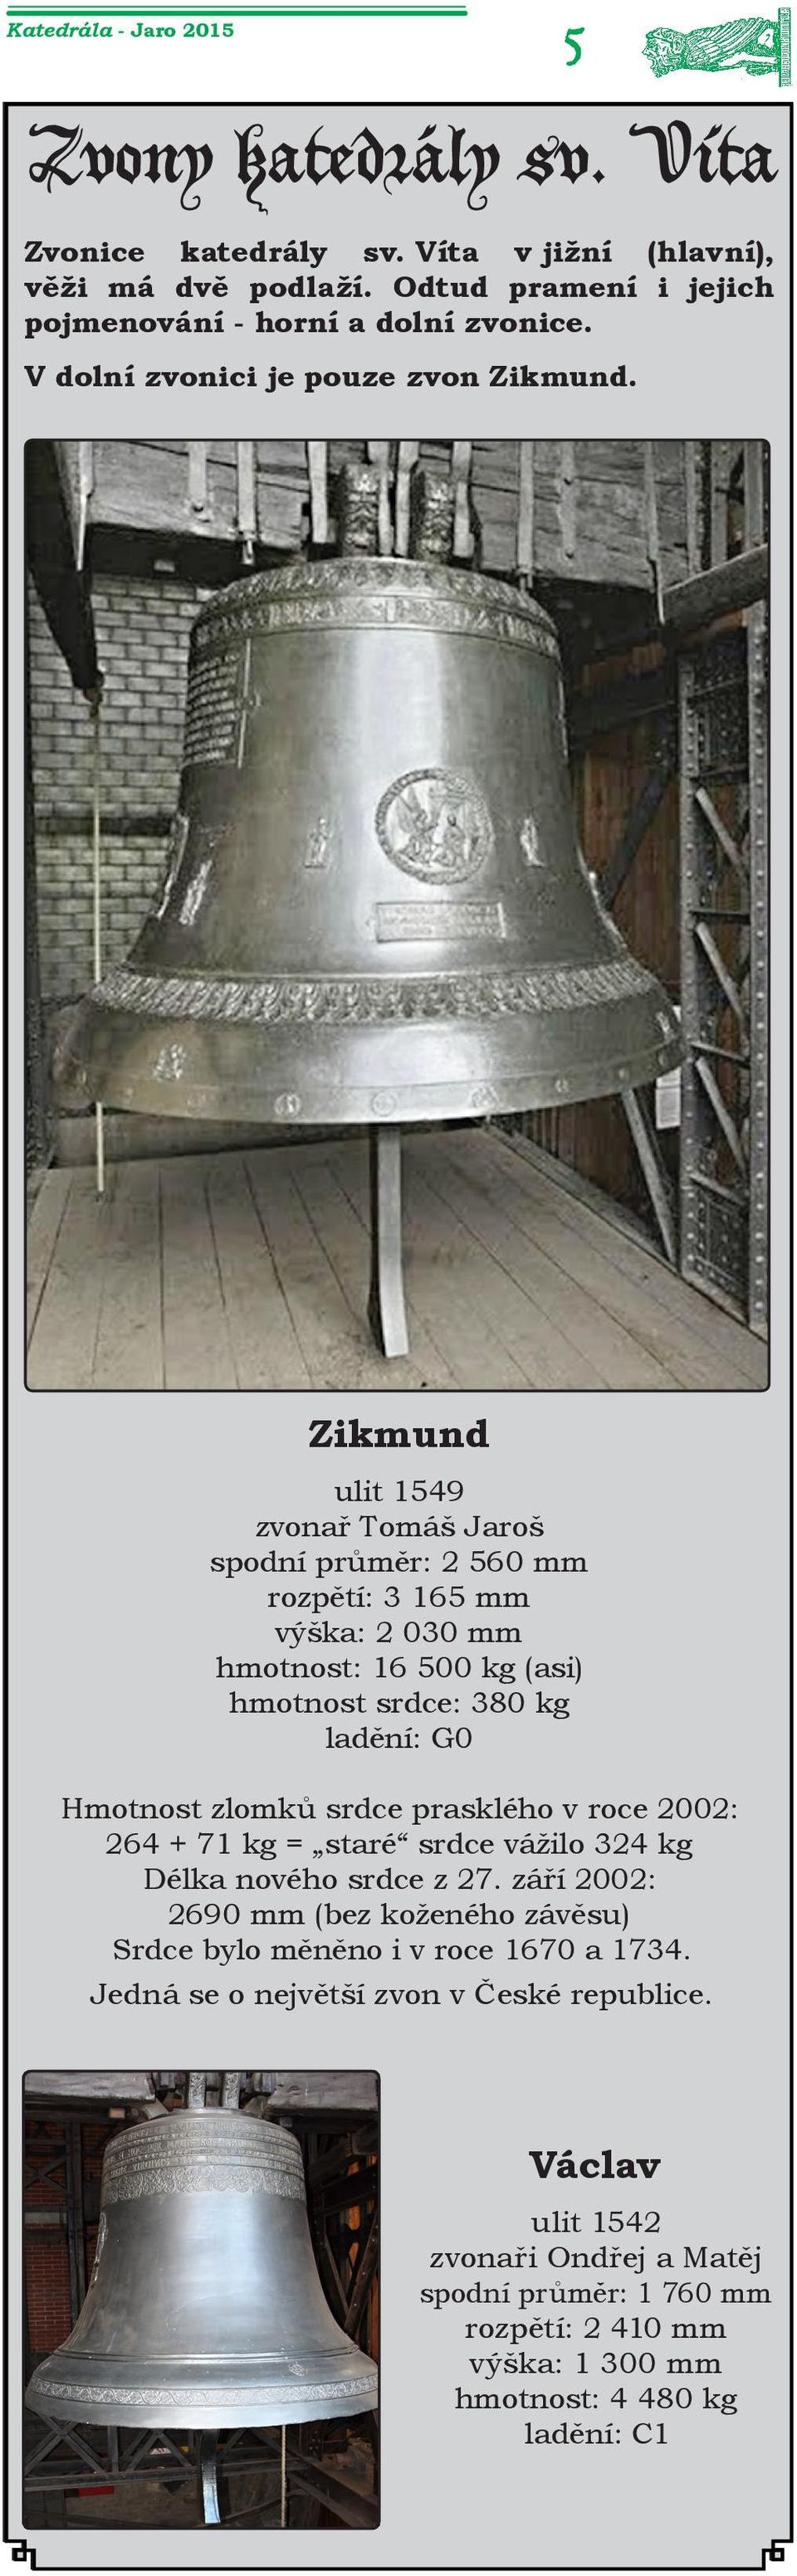 Zikmund ulit 1549 zvonař Tomáš Jaroš spodní průměr: 2 560 mm rozpětí: 3 165 mm výška: 2 030 mm hmotnost: 16 500 kg (asi) hmotnost srdce: 380 kg ladění: G0 Hmotnost zlomků srdce